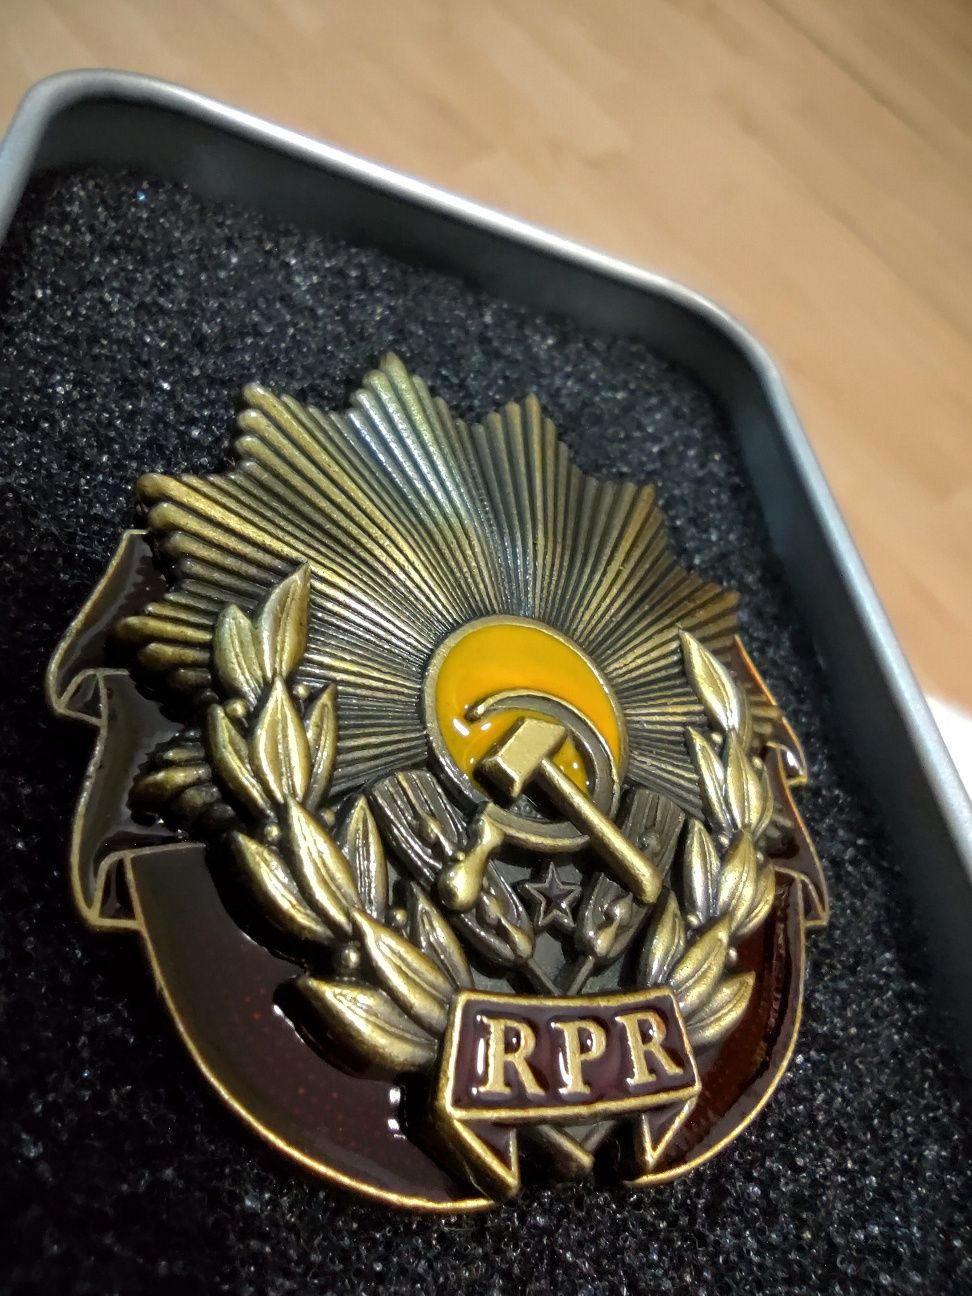 Vând insignă Republica Populară Română "RPR" copie